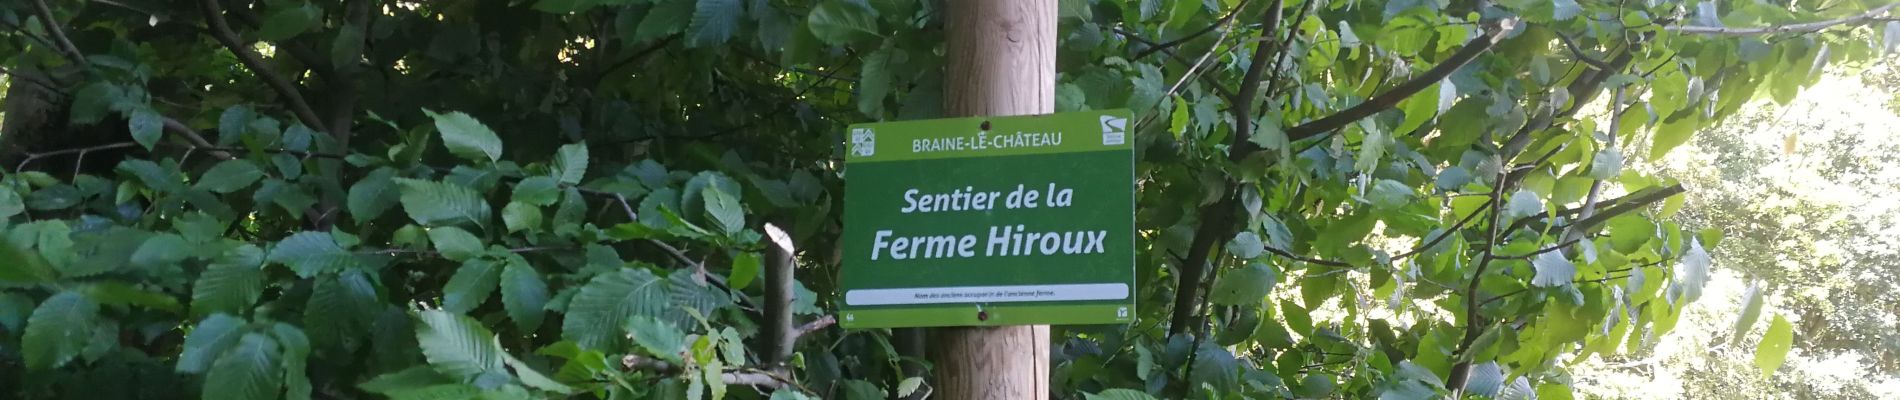 Point d'intérêt Ittre - Sentier de la ferme Hiroux (affichage Braine-Le-Château) - Photo